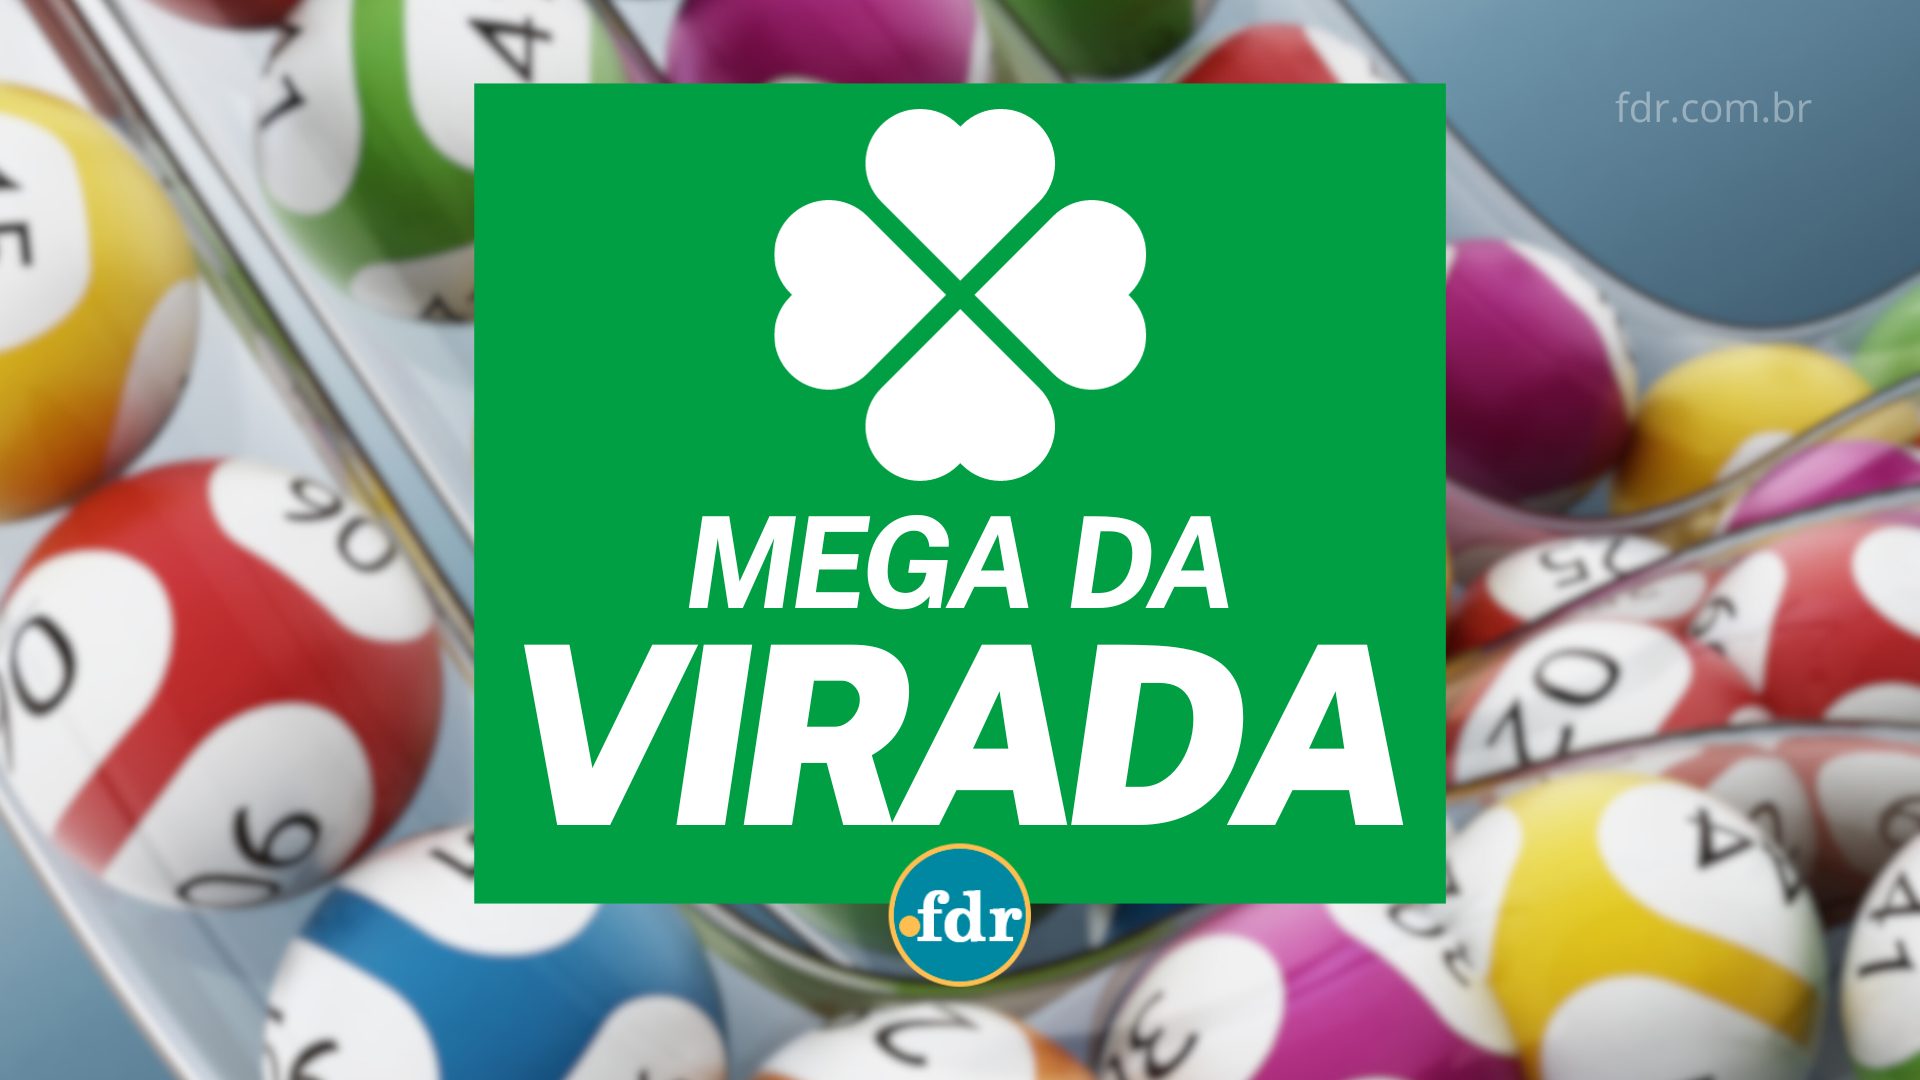 Mega da Virada: Caixa se pronuncia sobre retirada do prêmio de R$ 550 milhões